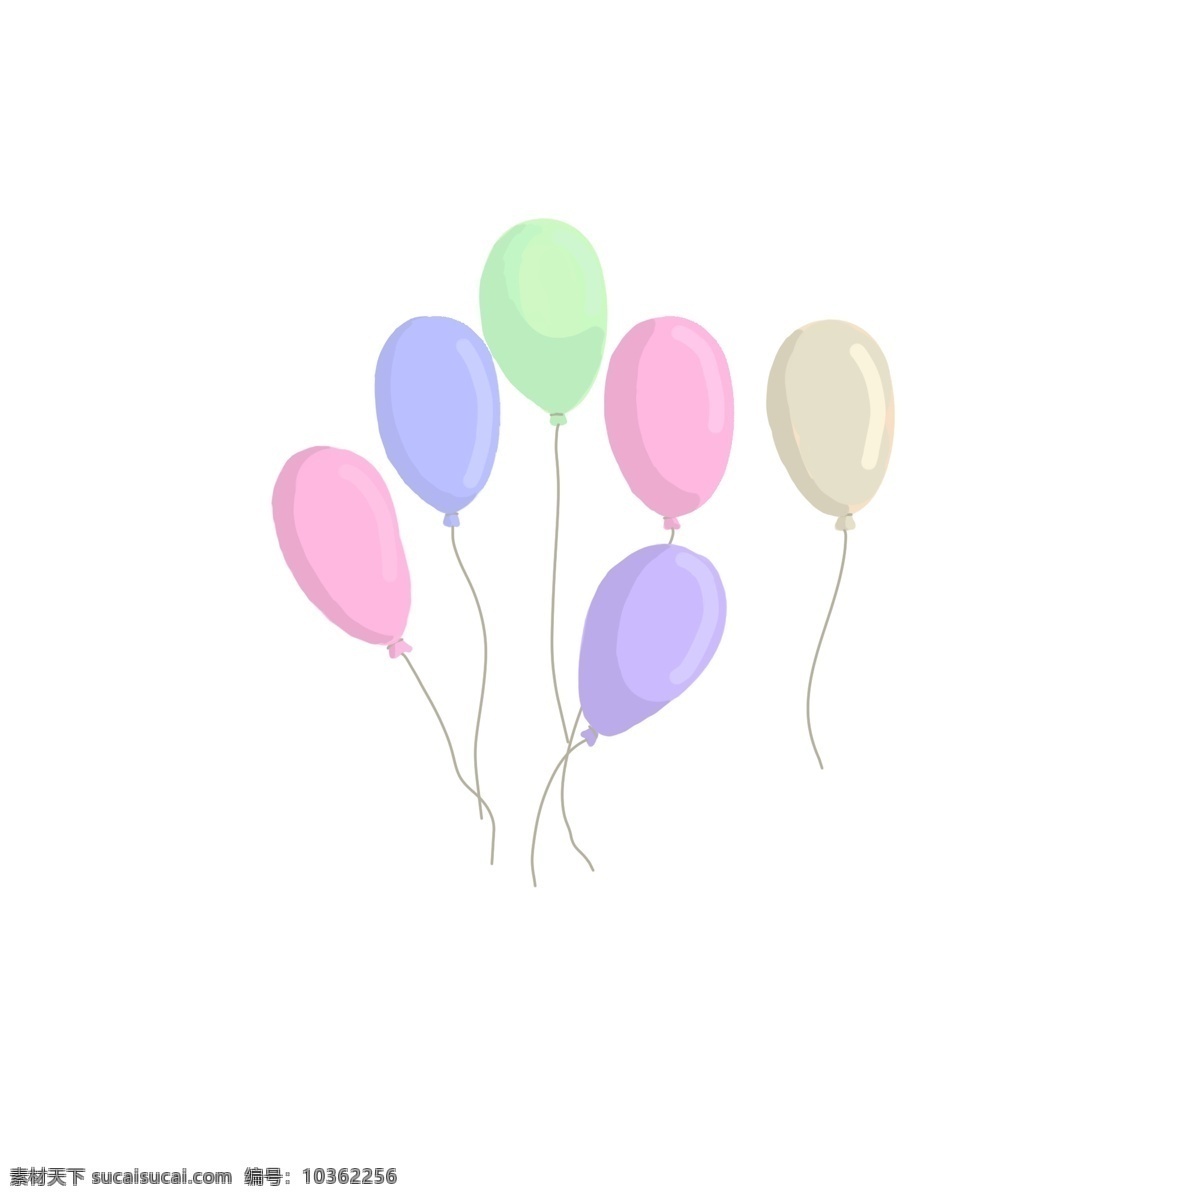 原创 漂浮 可爱 气球 插画 卡通 小清新 彩色